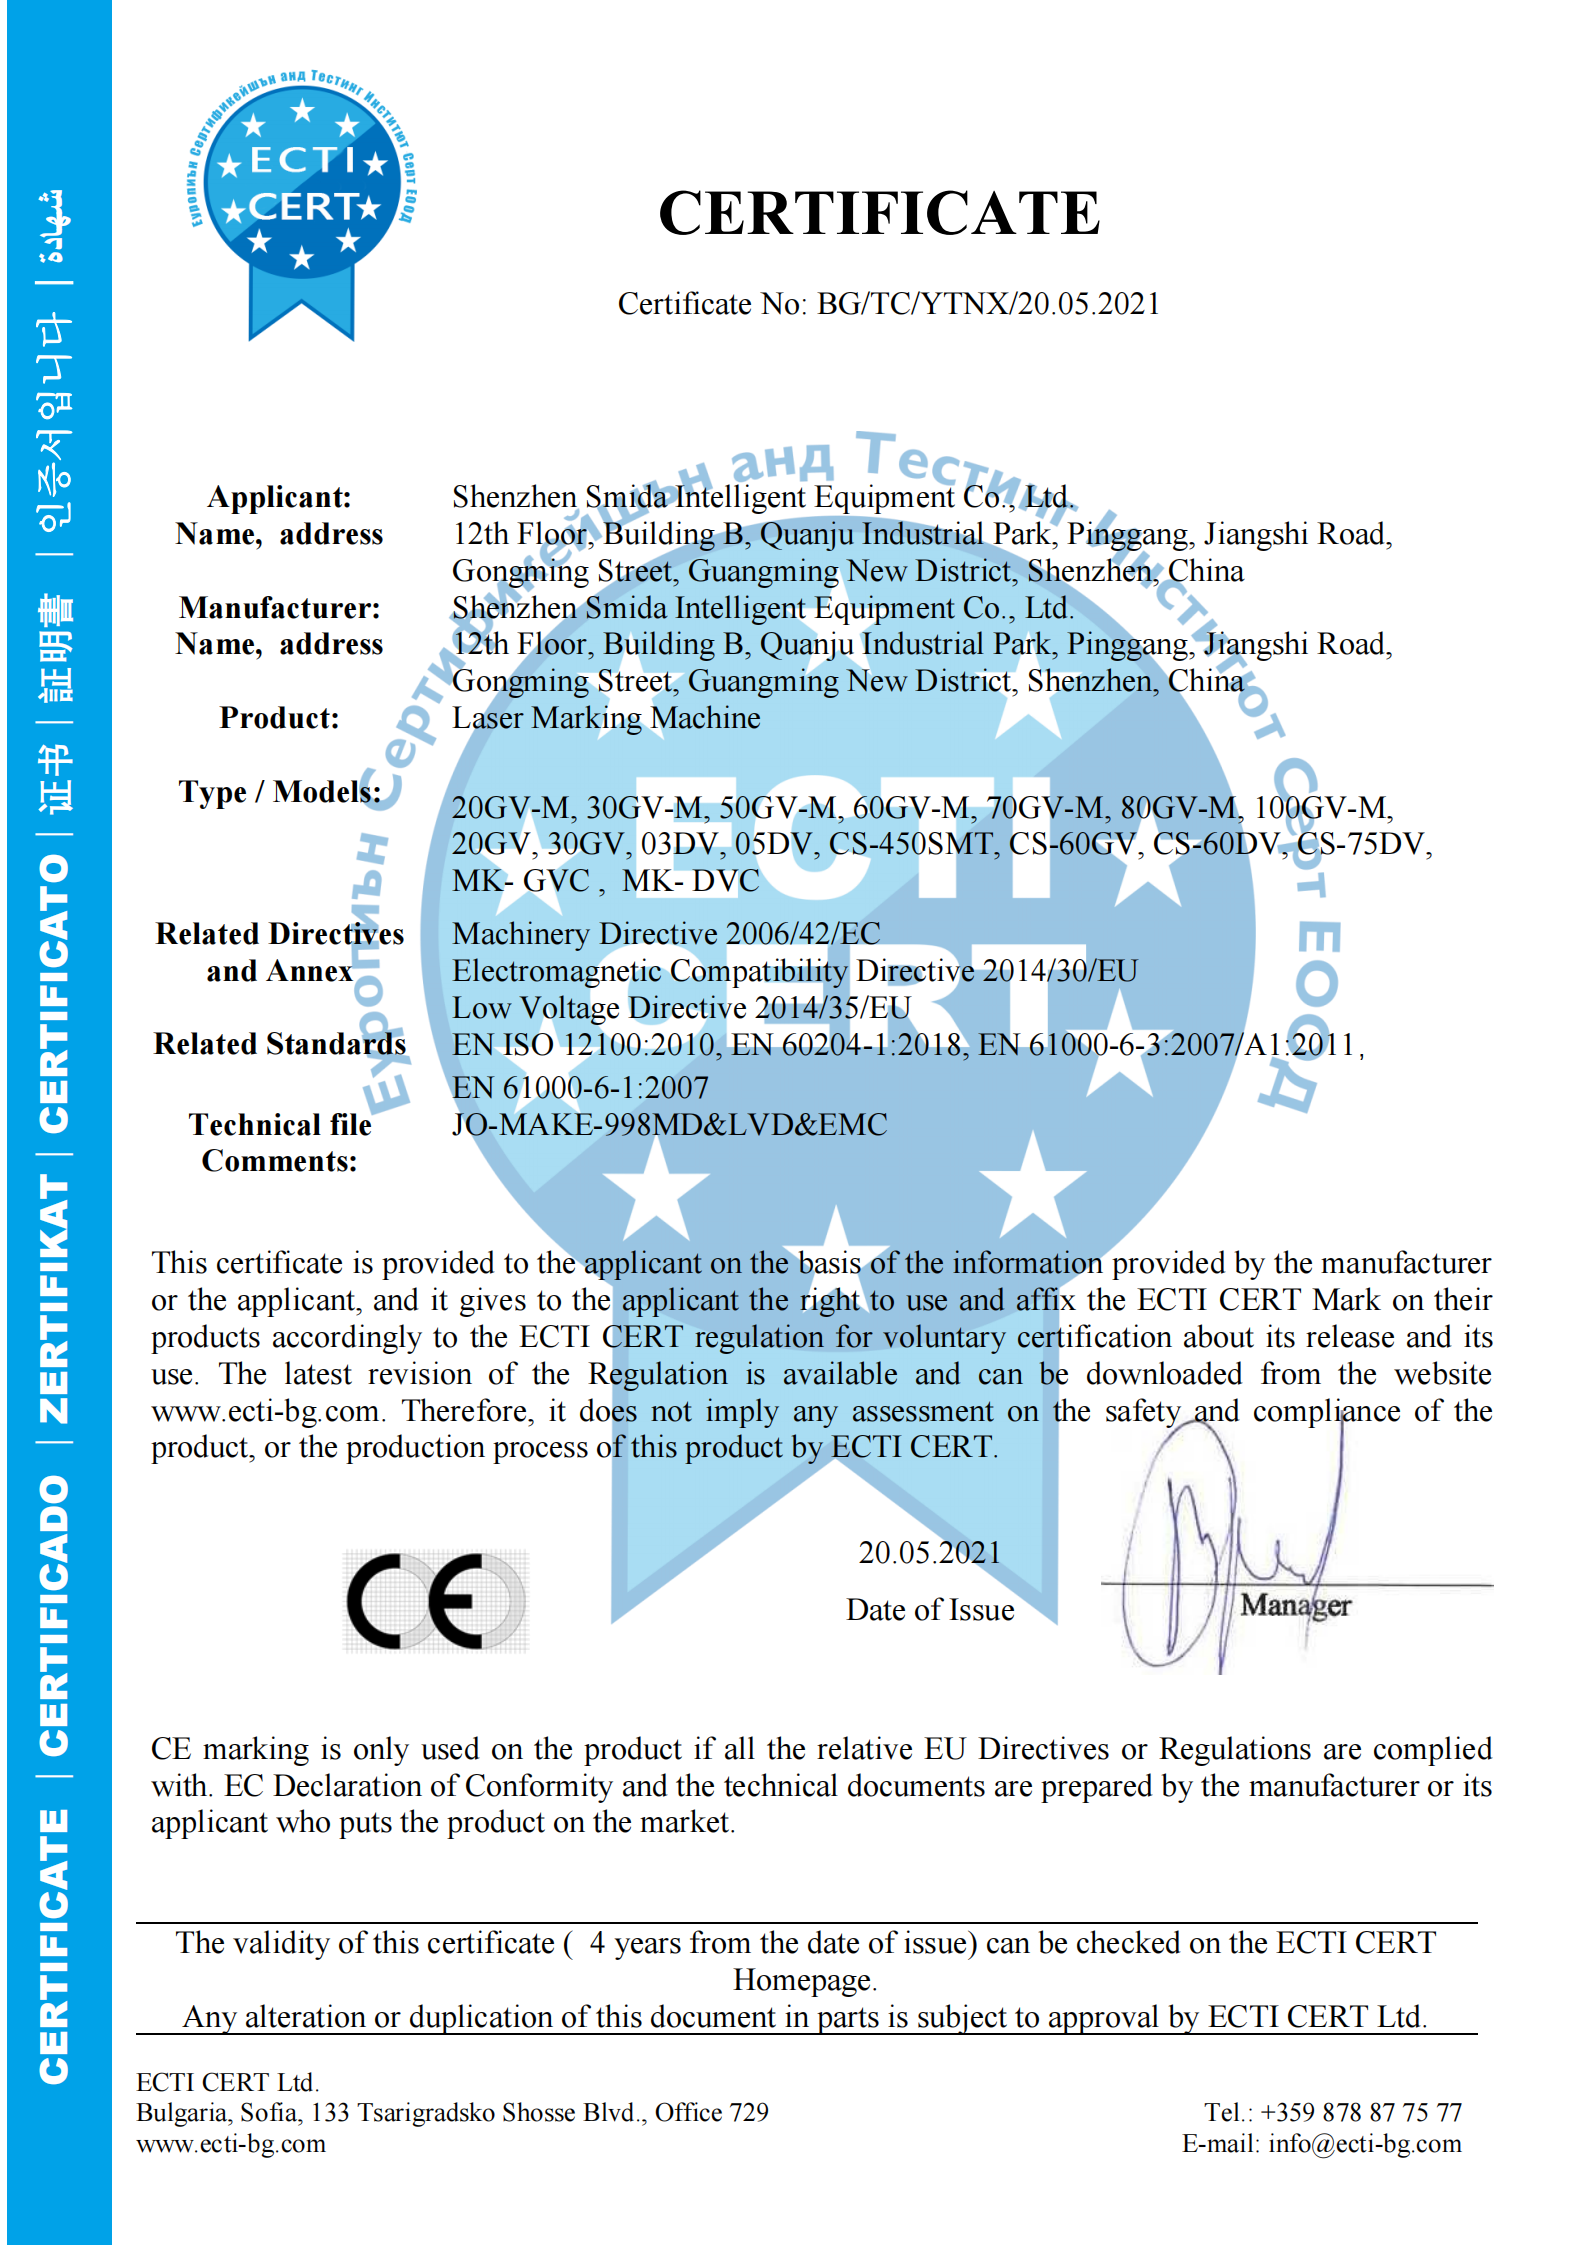 Pridėtas CE sertifikatas lazerinio žymėjimo mašinai